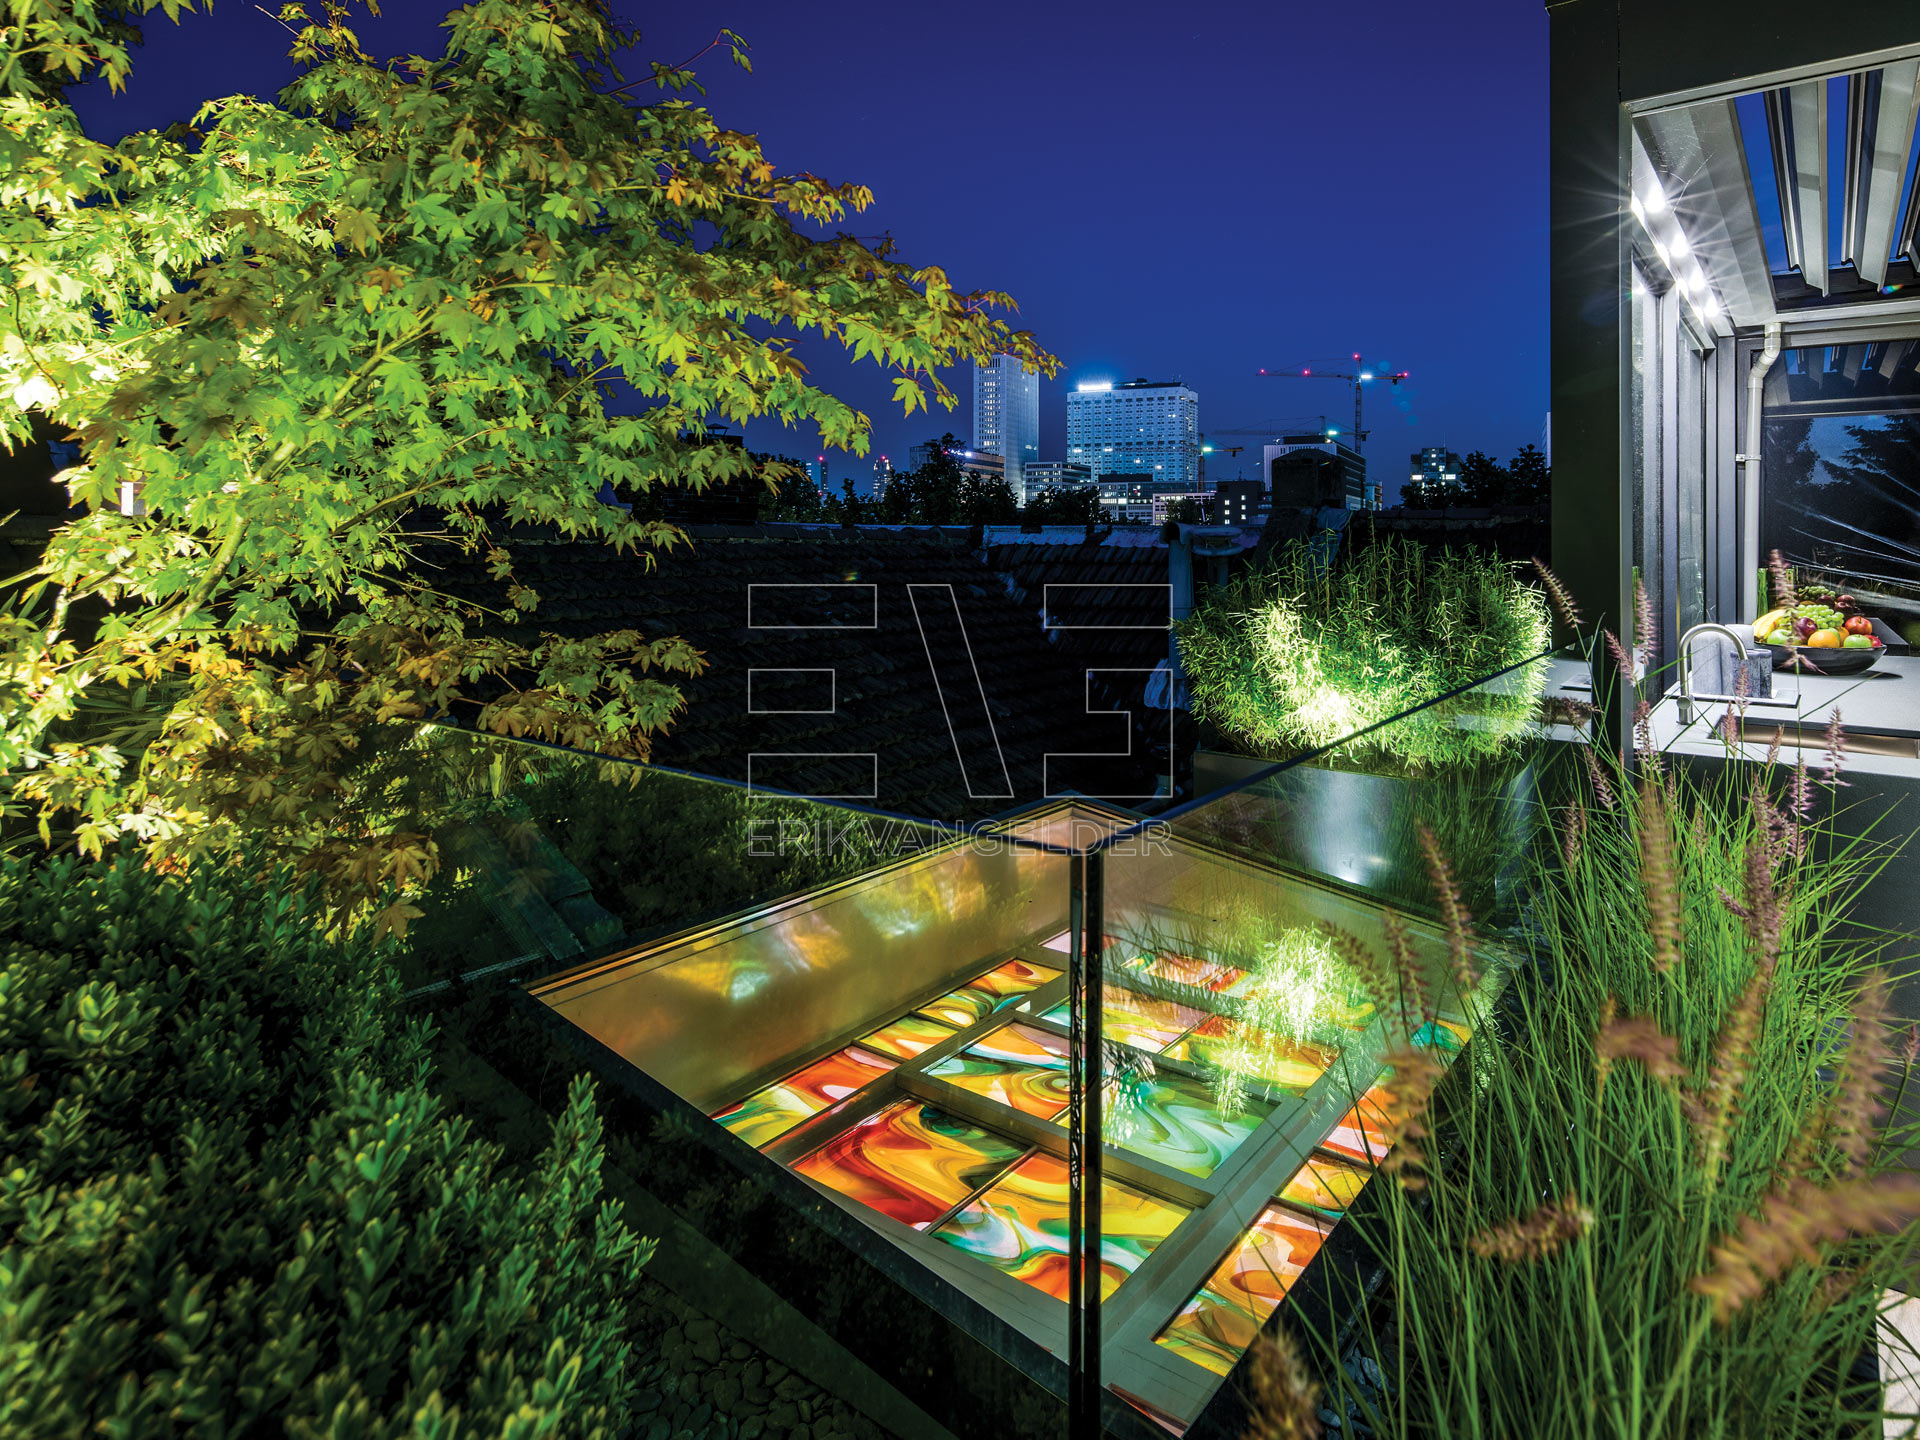 Kunst in de tuin uitgelicht luxe moderne sfeervolle daktuin erikvangelder tuinarchitect tuindesign exlusive gardendesign luxury